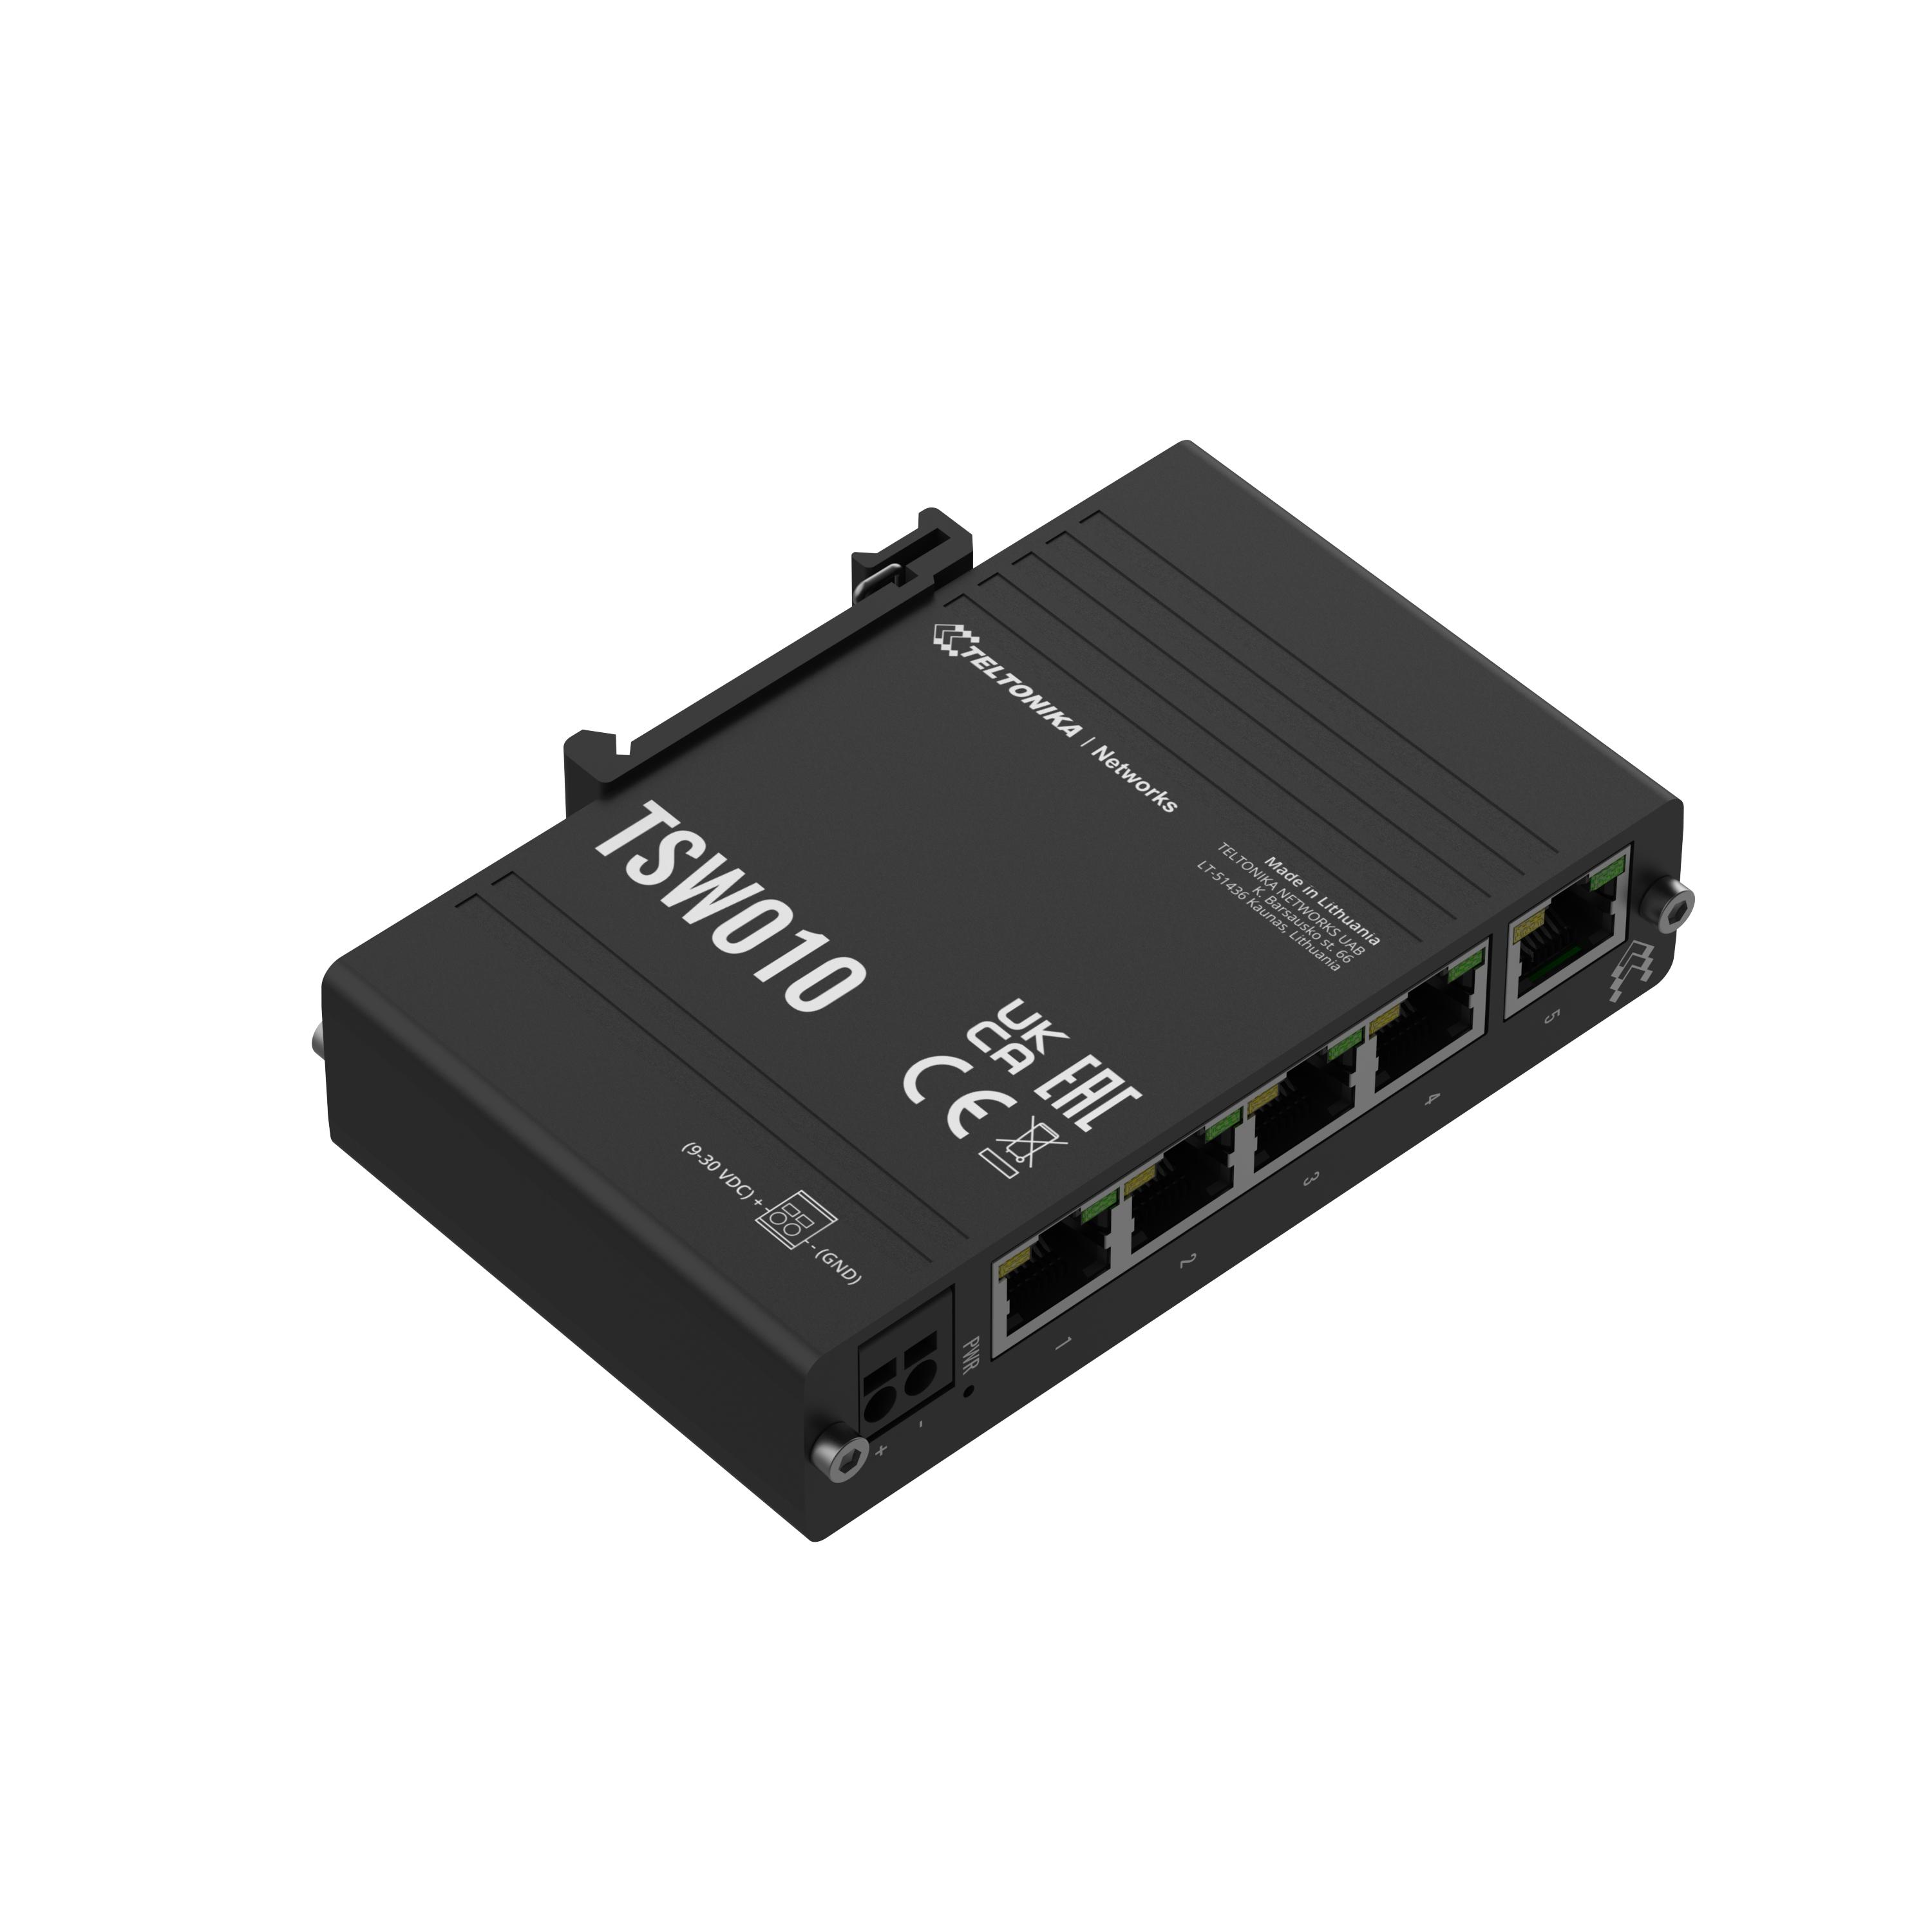 TSW010 - Teltonika Switches. 5 x Ethernet ports